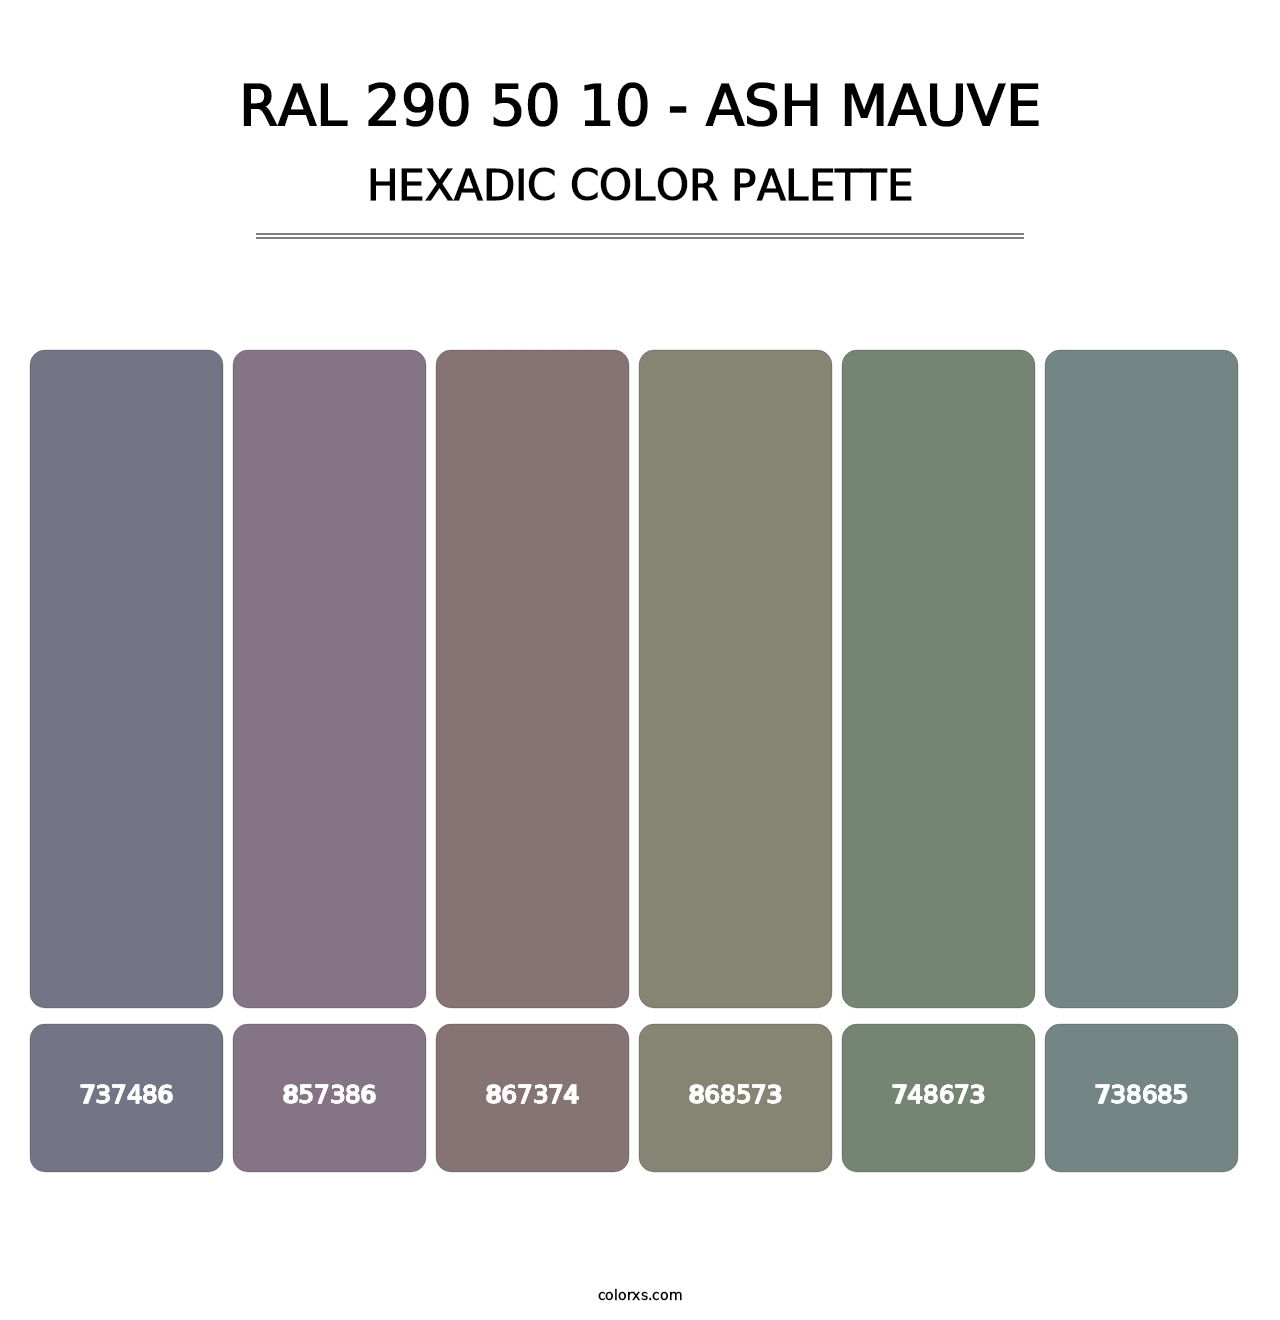 RAL 290 50 10 - Ash Mauve - Hexadic Color Palette